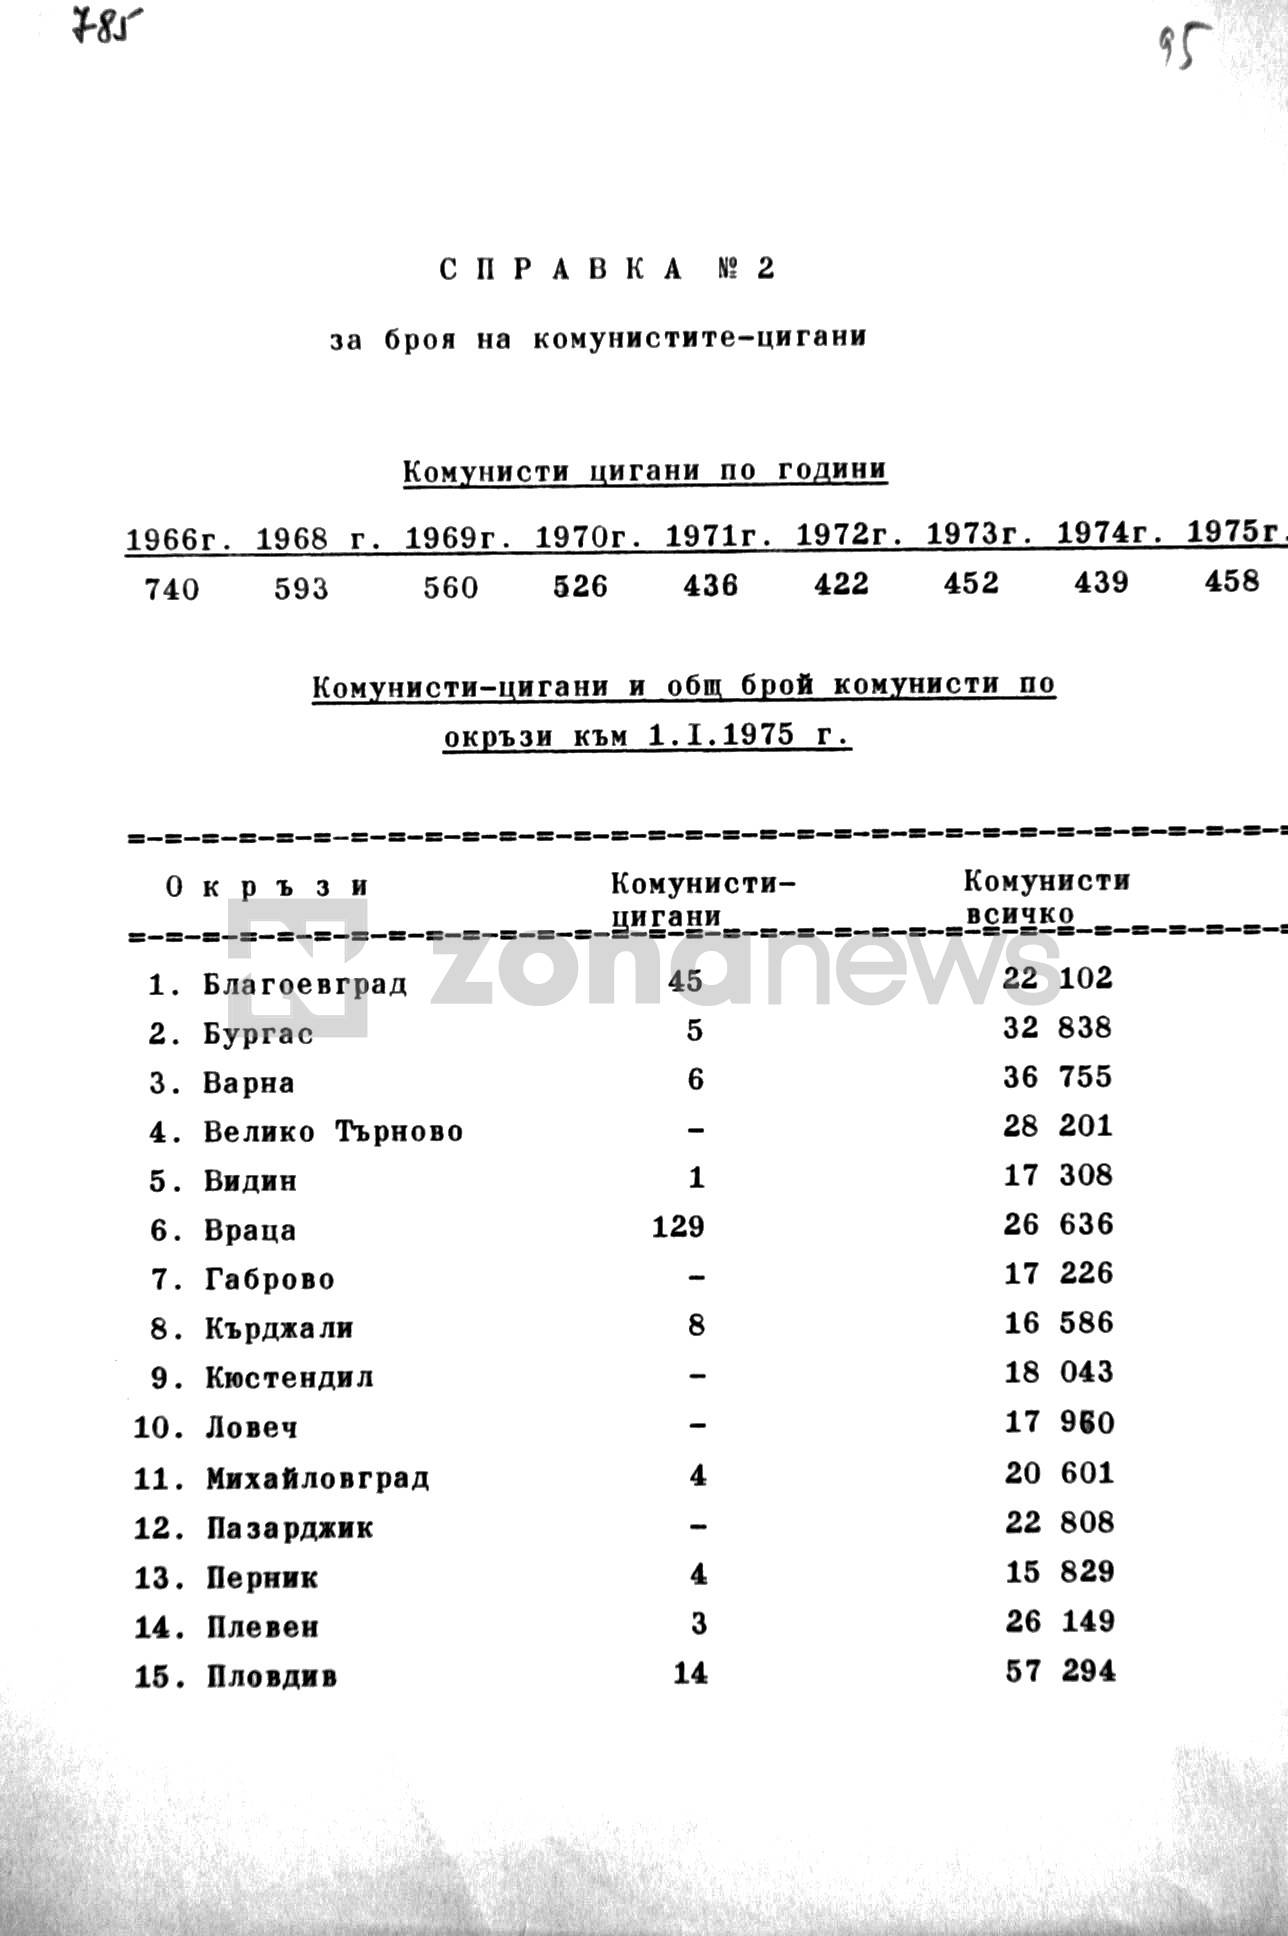 Справка за броя на циганите-комунисти по окръзи към 01.01.1975 г.